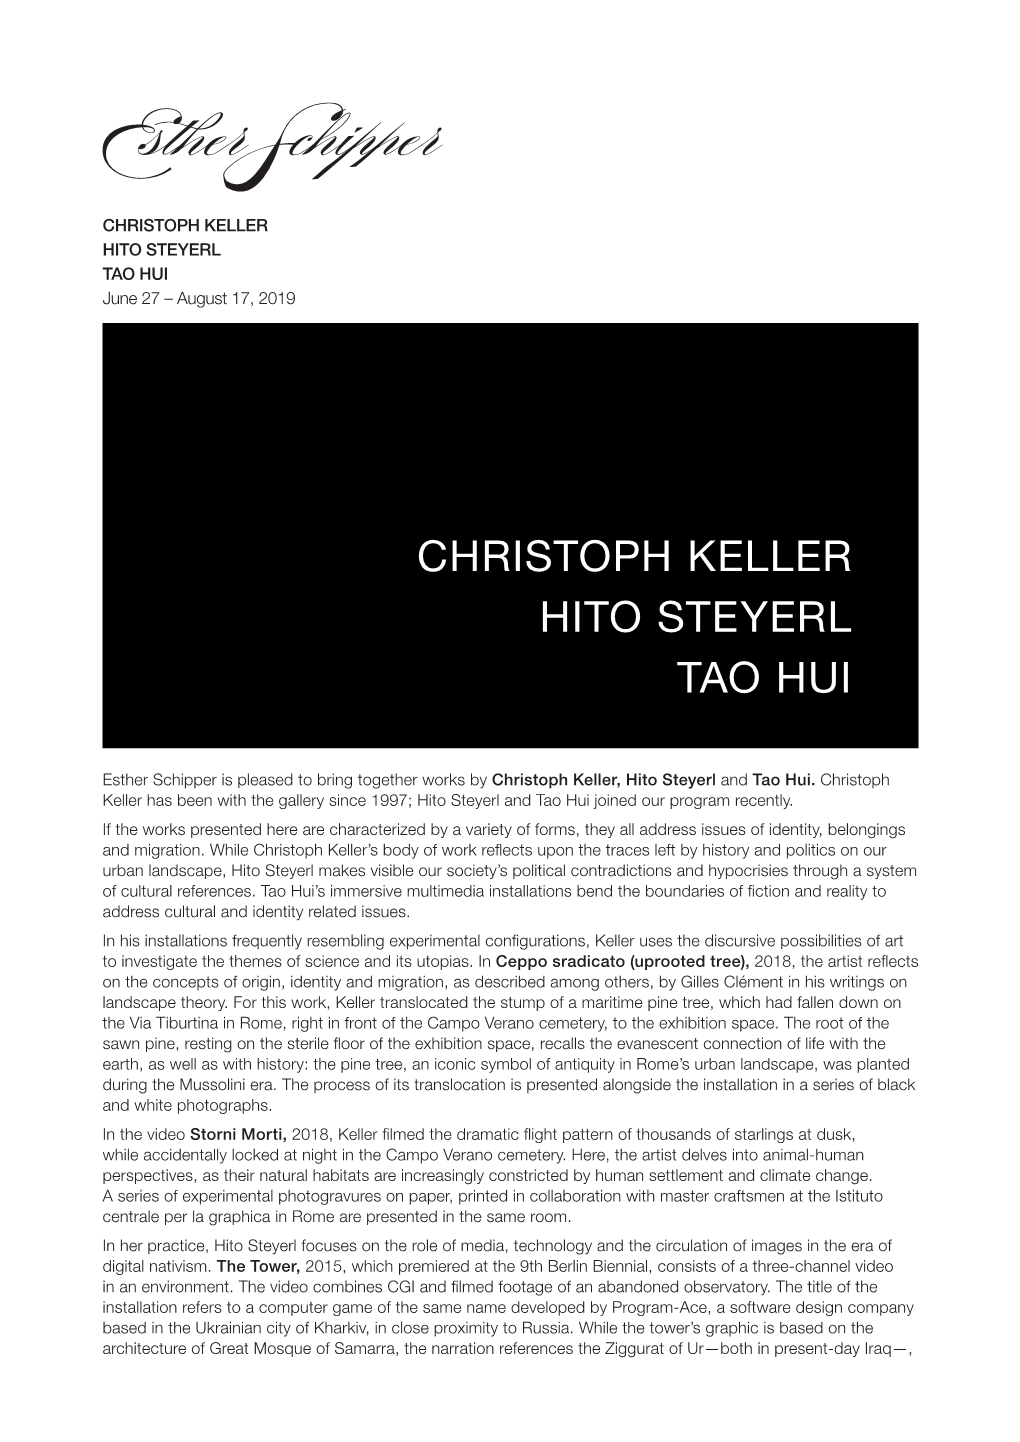 CHRISTOPH KELLER HITO STEYERL TAO HUI June 27 – August 17, 2019